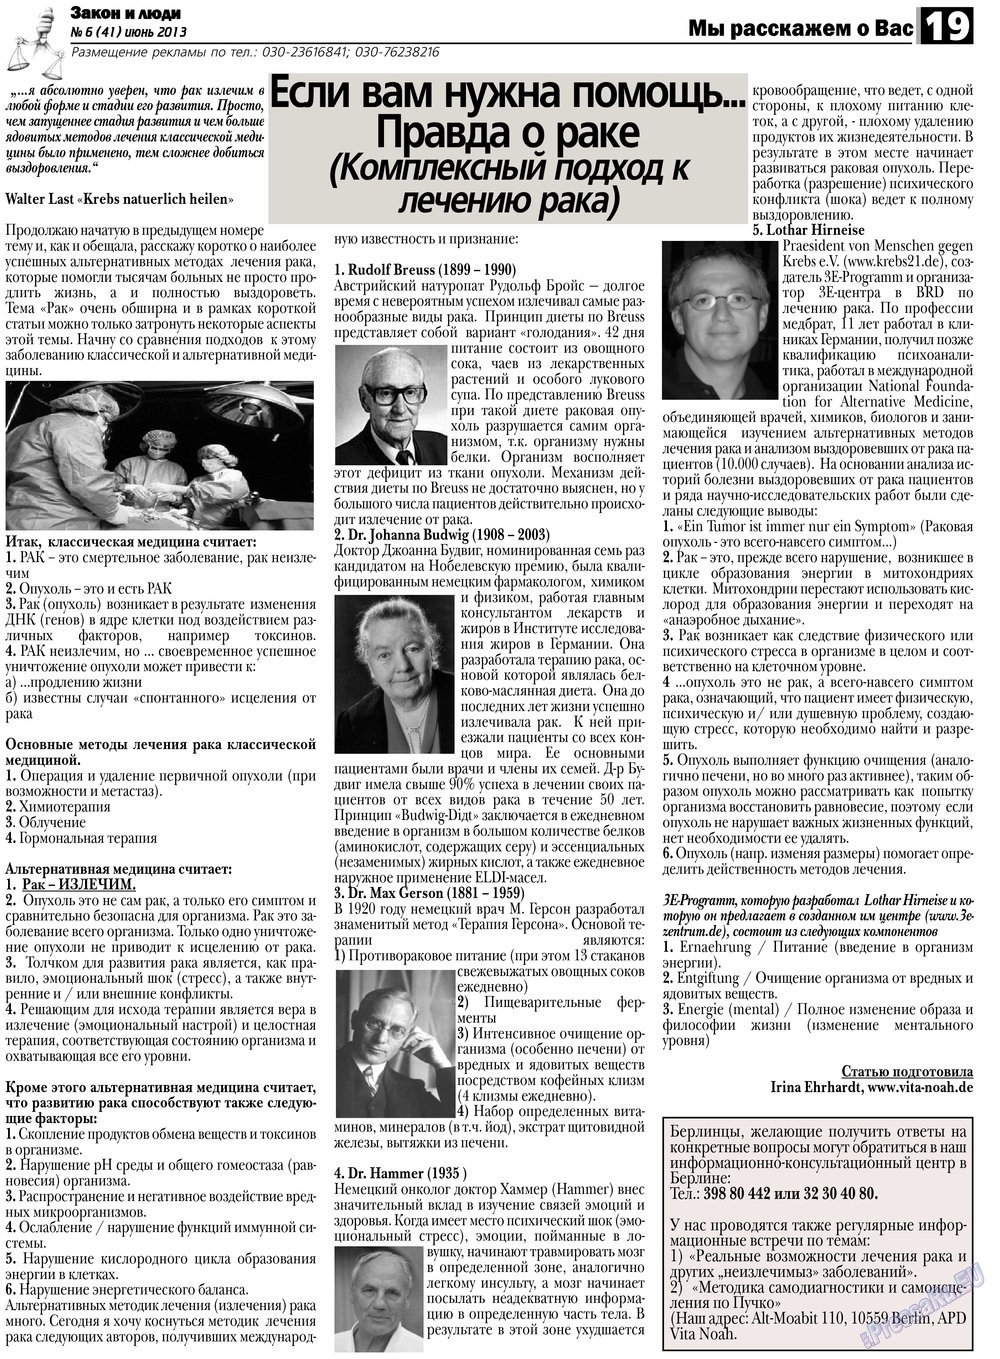 Закон и люди, газета. 2013 №6 стр.19